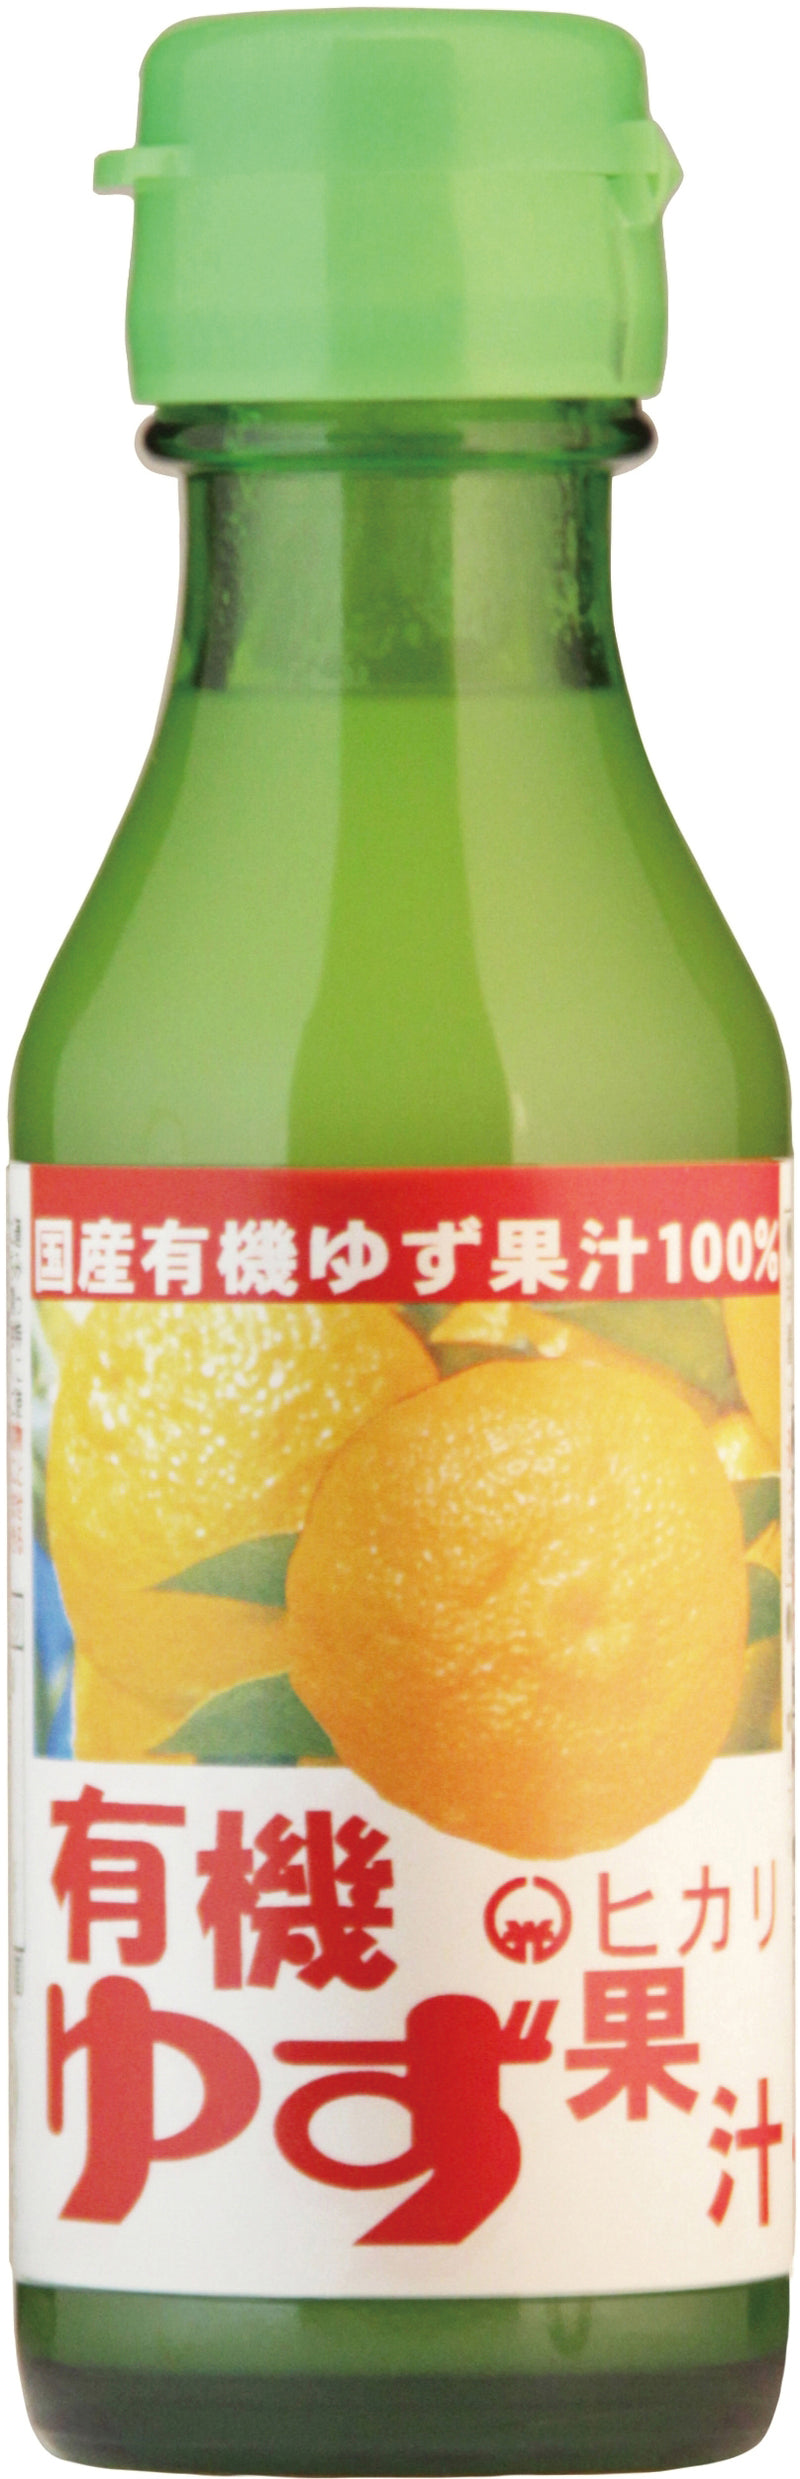 有機ゆず果汁 - 03005